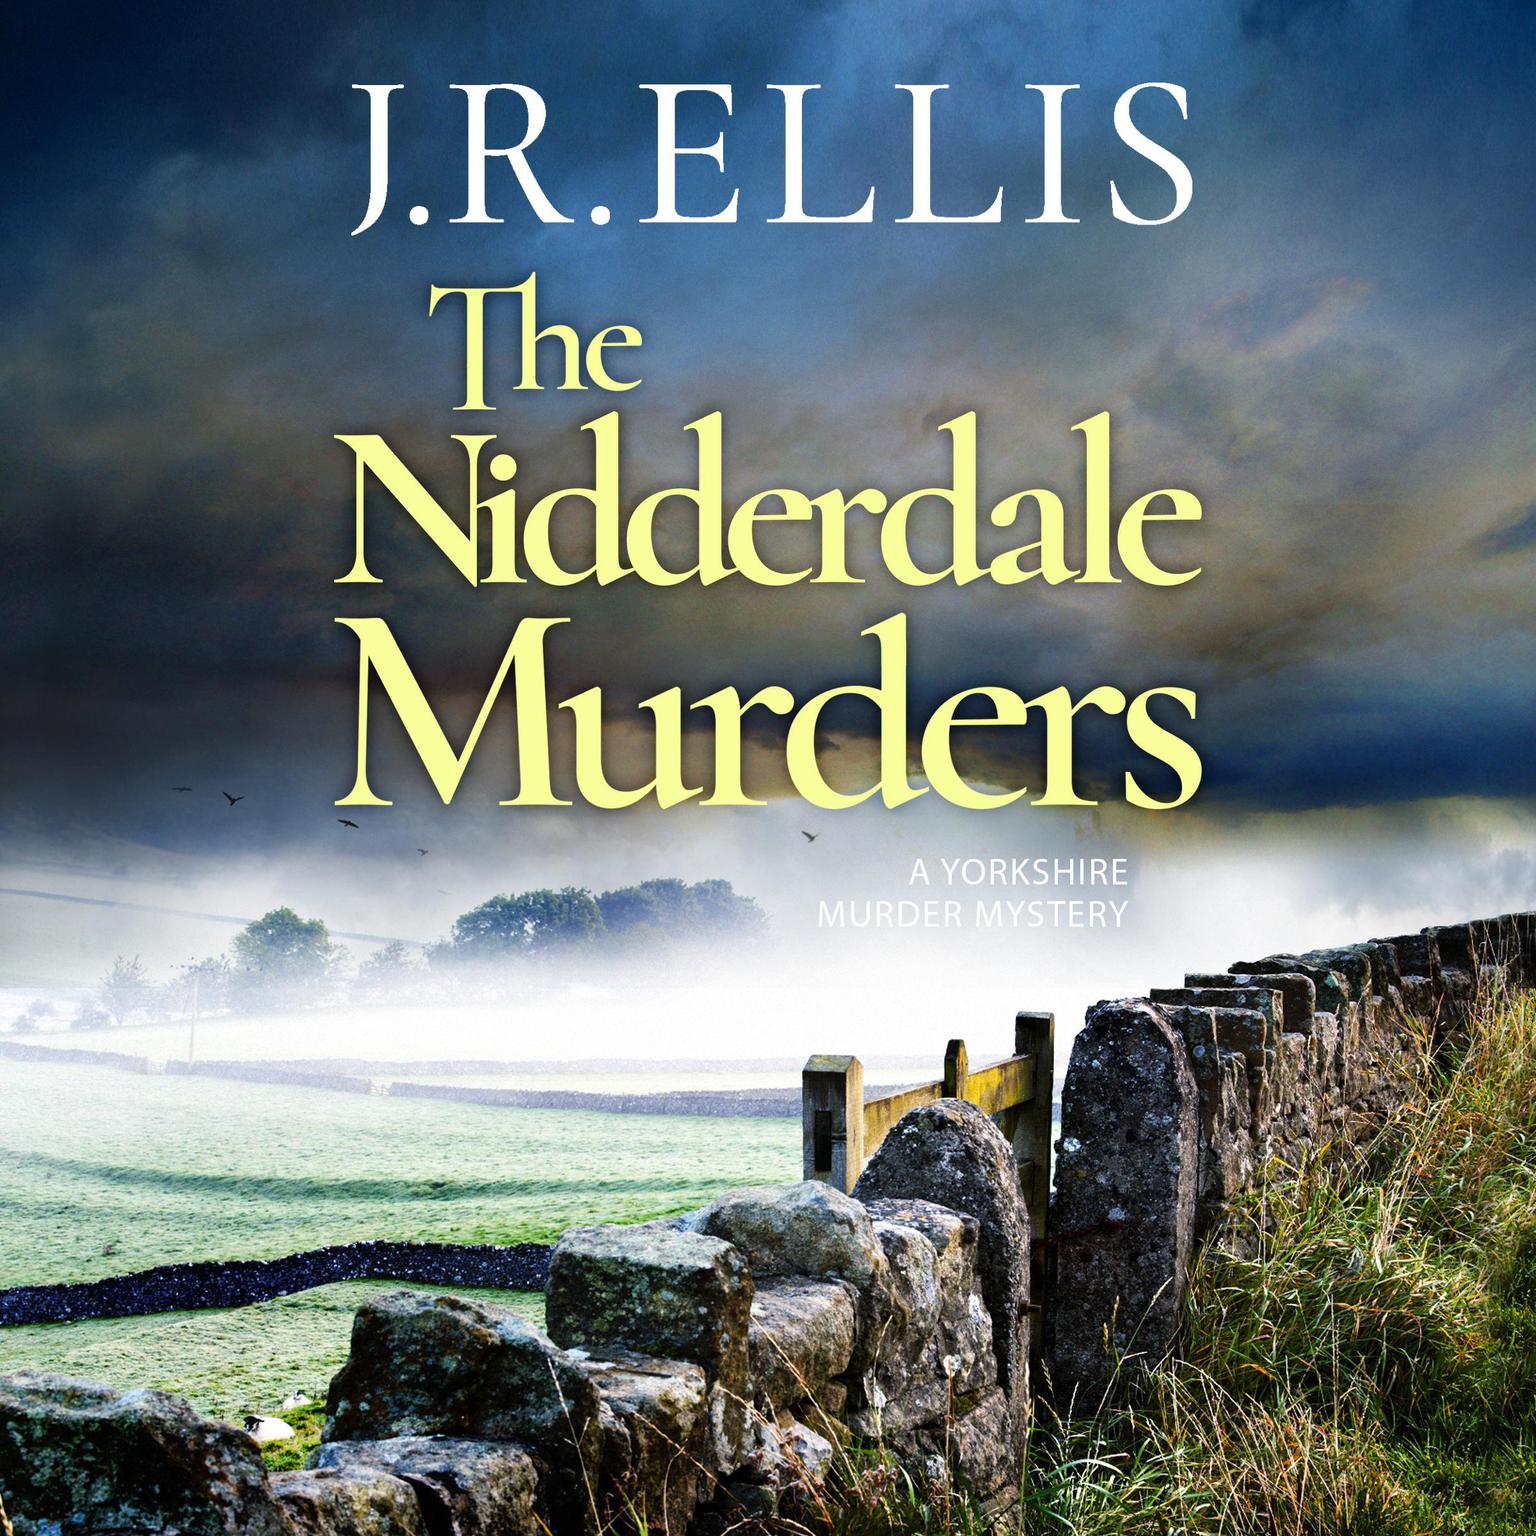 The Nidderdale Murders Audiobook, by J. R. Ellis